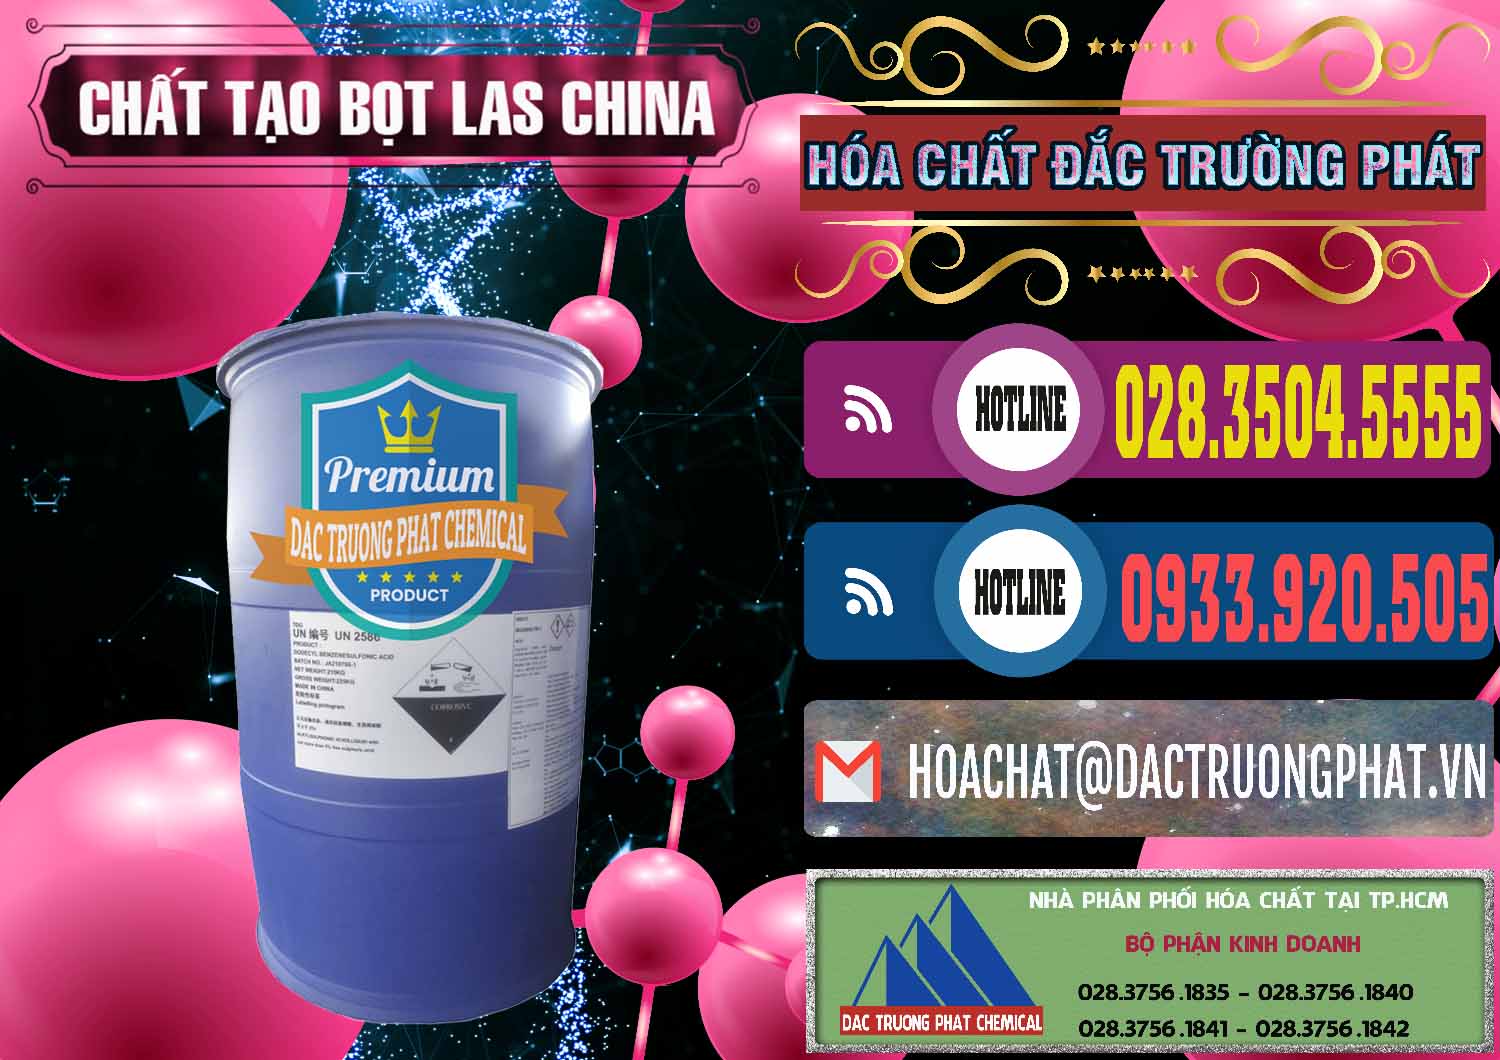 Đơn vị chuyên kinh doanh và bán Chất tạo bọt Las Trung Quốc China - 0451 - Cty chuyên kinh doanh và phân phối hóa chất tại TP.HCM - muabanhoachat.com.vn